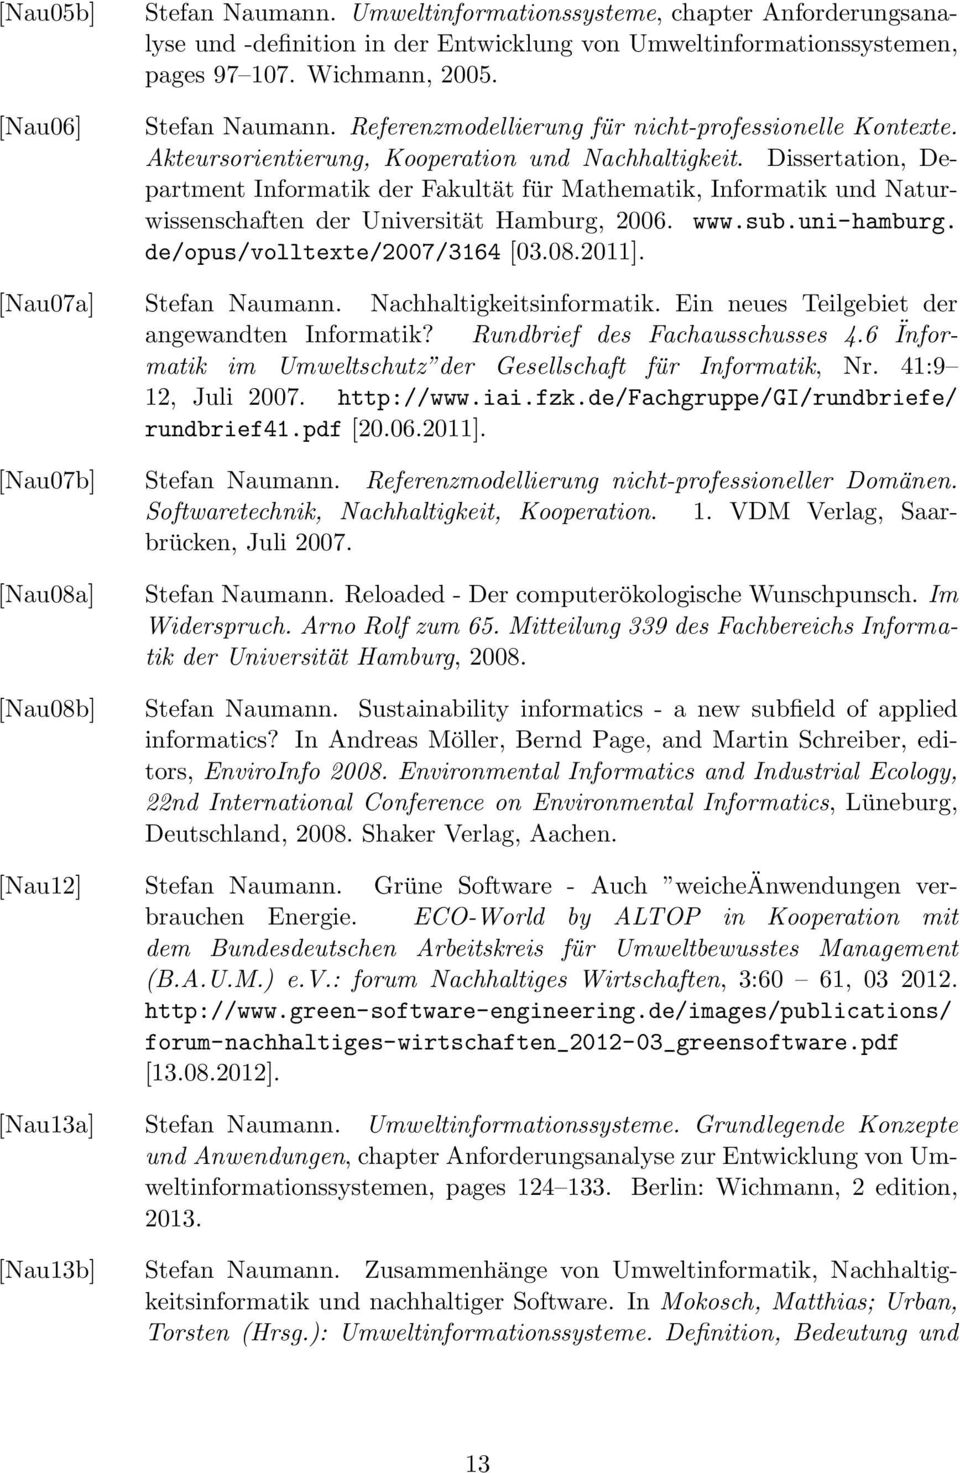 uni-hamburg. de/opus/volltexte/2007/3164 [03.08.2011]. [Nau07a] Stefan Naumann. Nachhaltigkeitsinformatik. Ein neues Teilgebiet der angewandten Informatik? Rundbrief des Fachausschusses 4.